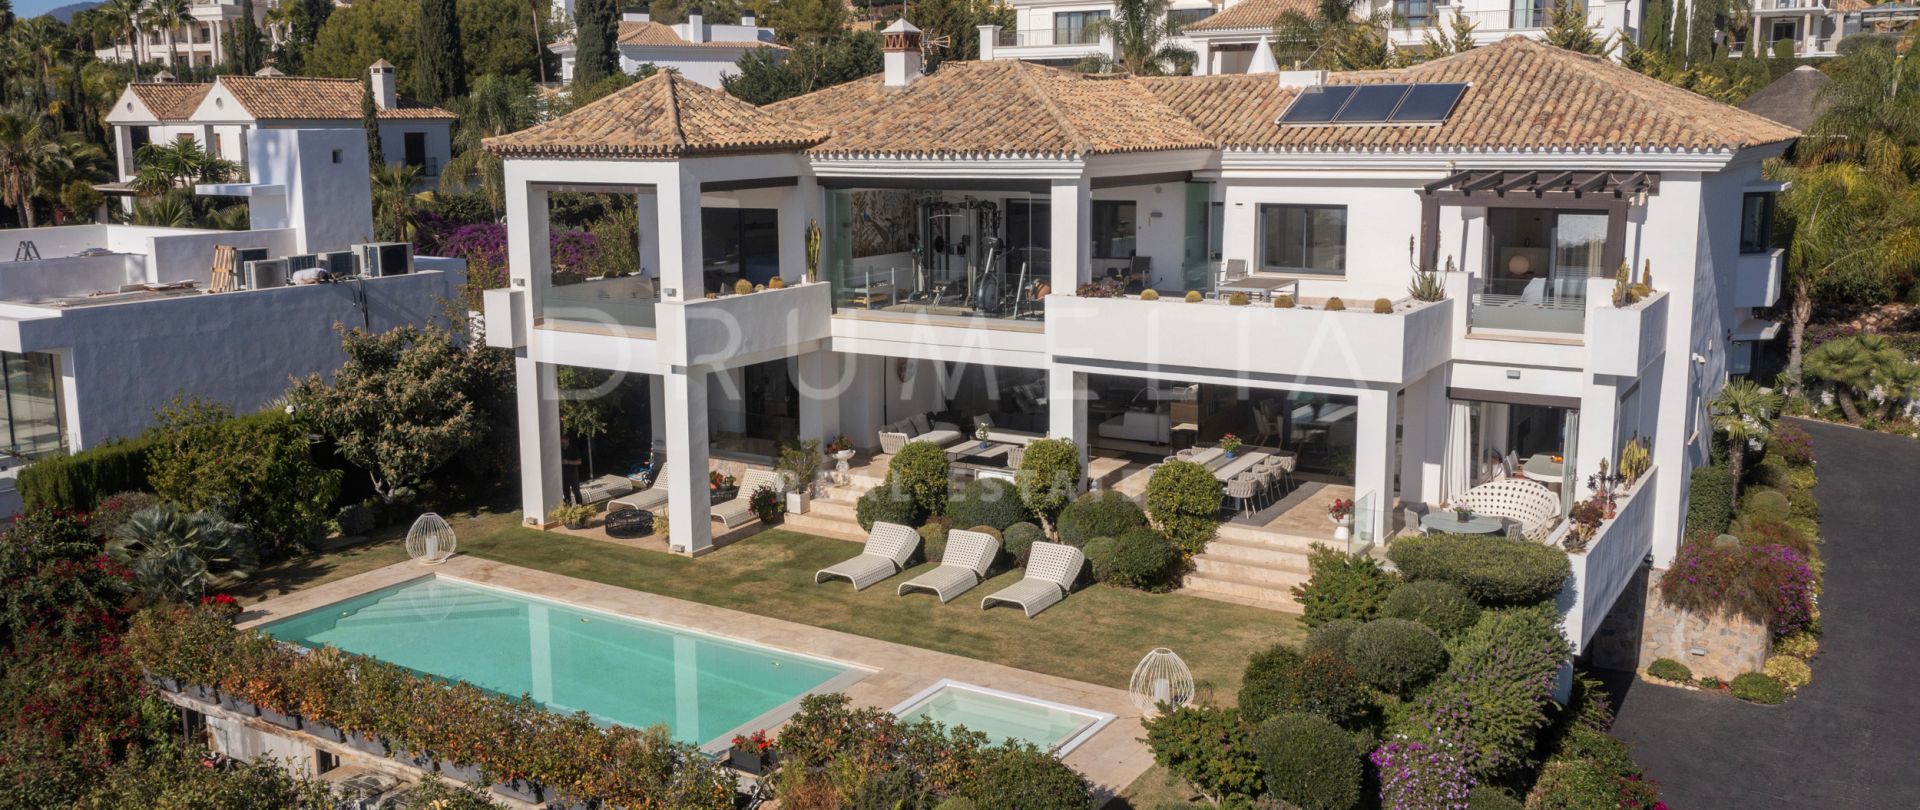 Villa de lujo reformada con vistas panorámicas al mar en Sierra Blanca, Marbella